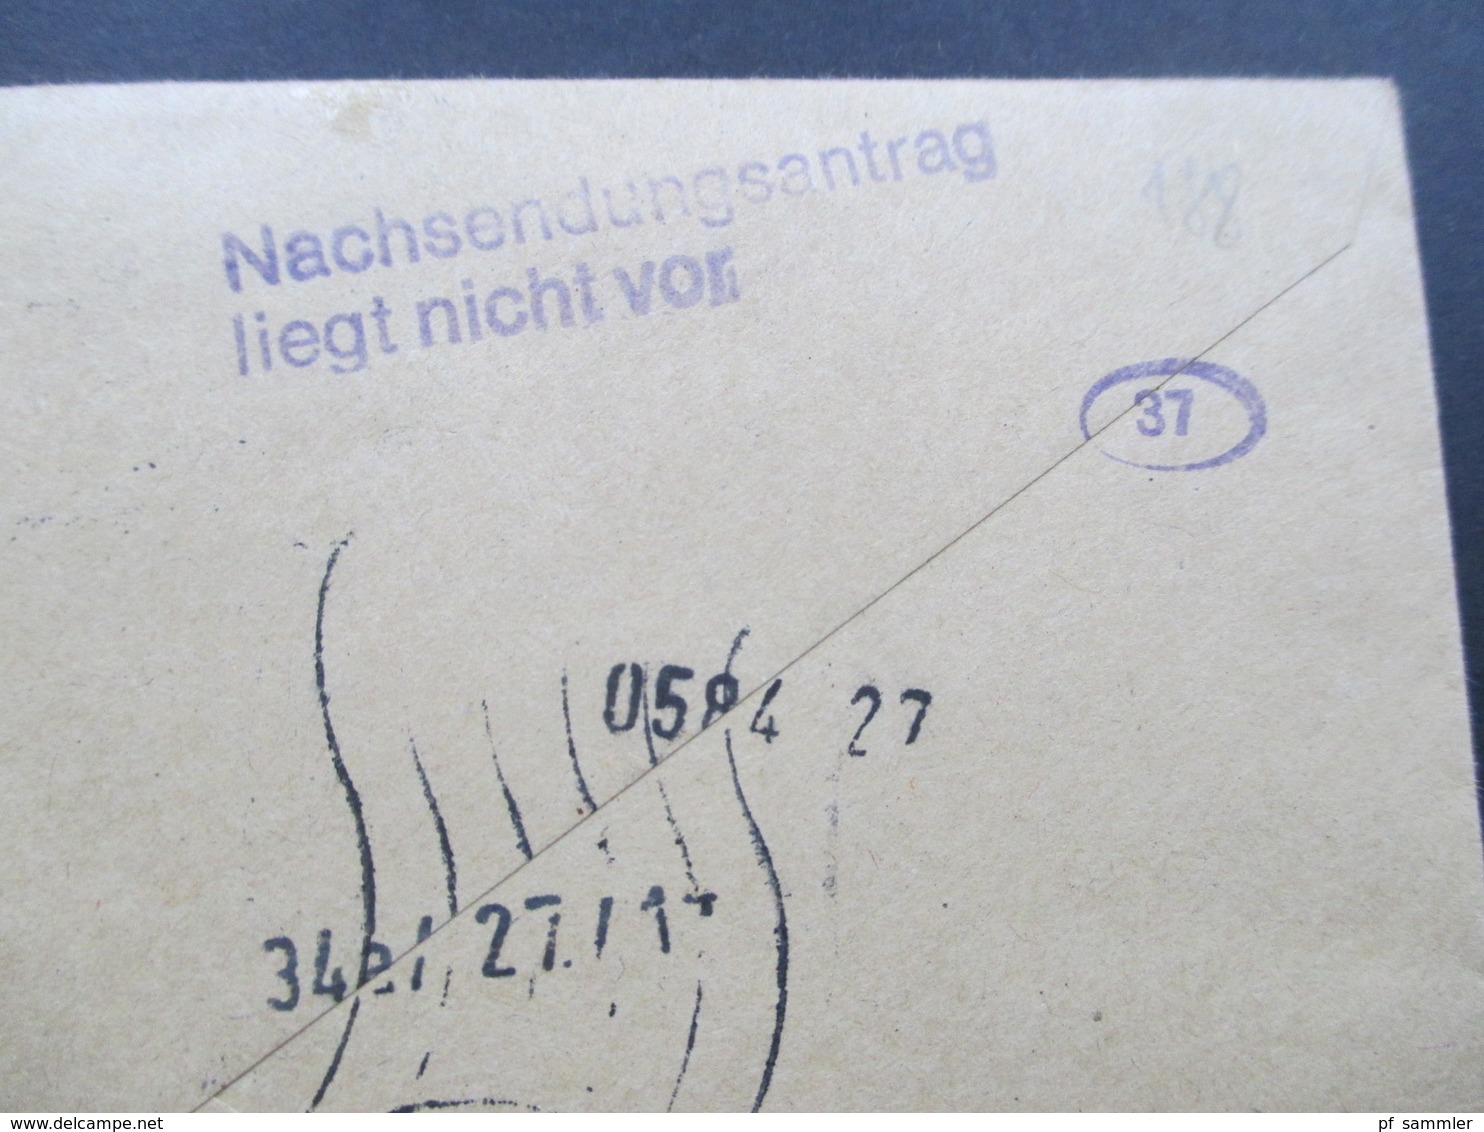 Berlin 1977 Eilbrief Mit Berlin ZD 4x W43 Als 12er Block Aus MHB. Viele Stempel! Nachsendeantrag Liegt Nicht Vor. - Covers & Documents